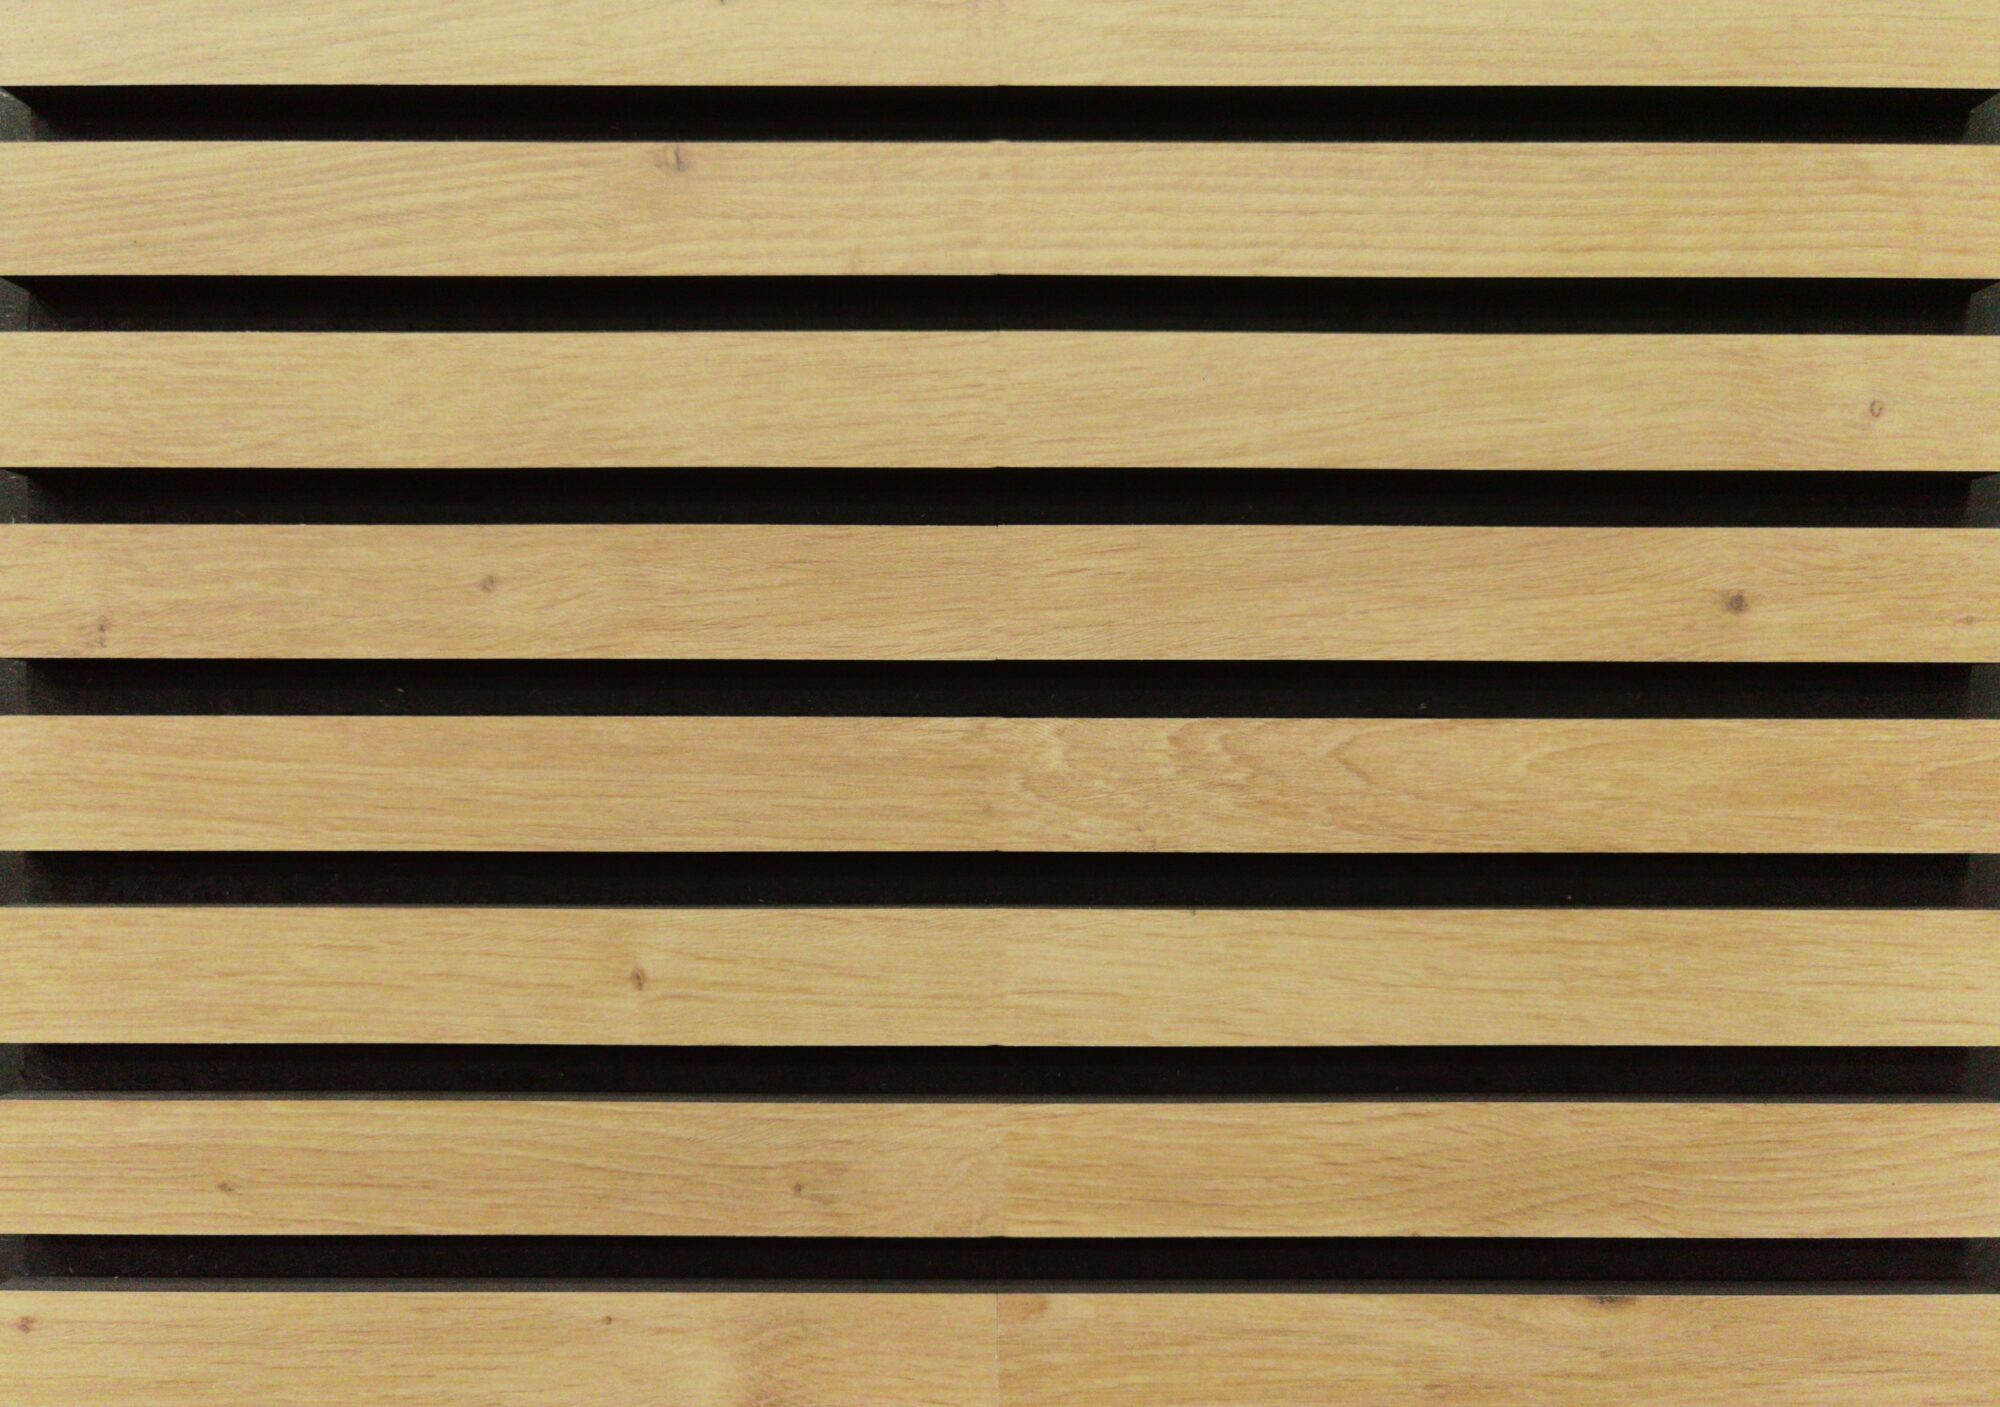 Cómo distinguir un buen panel acústico de madera?